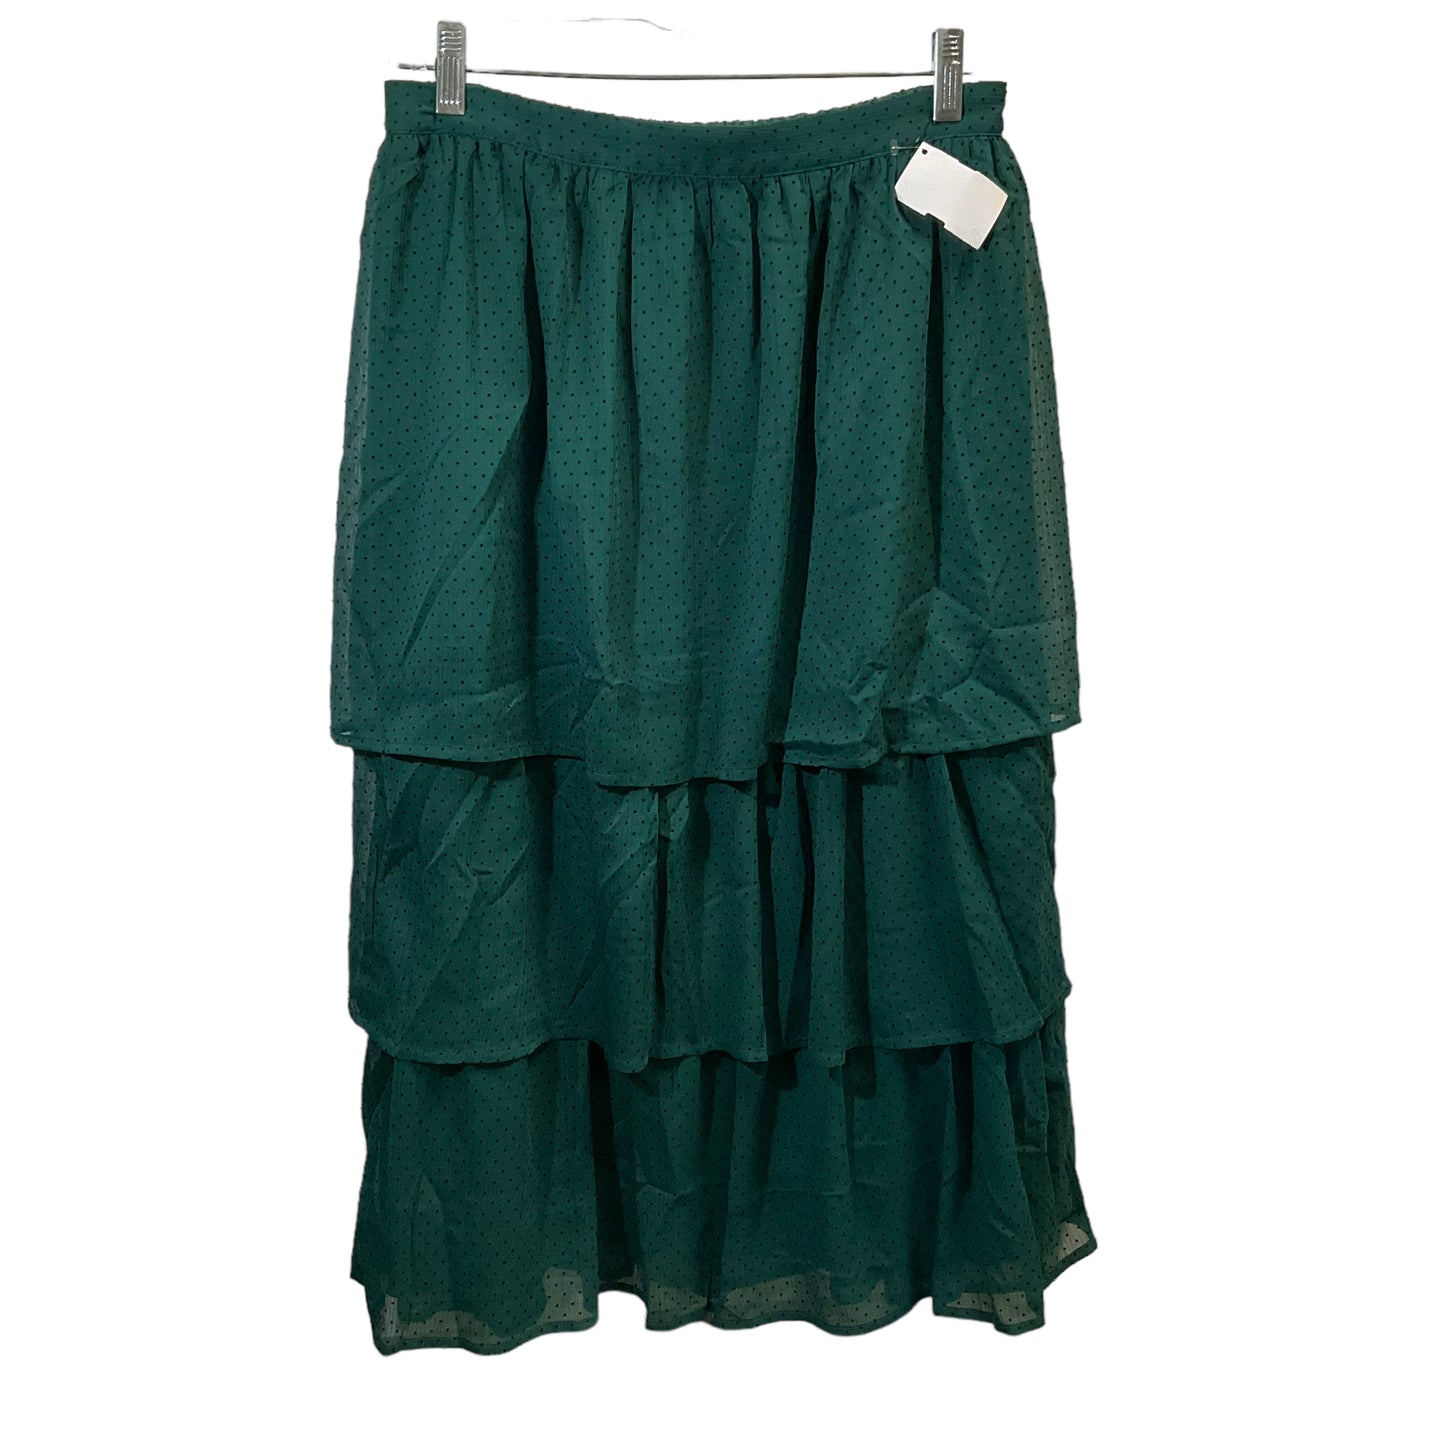 Skirt Midi By J Crew  Size: 2x